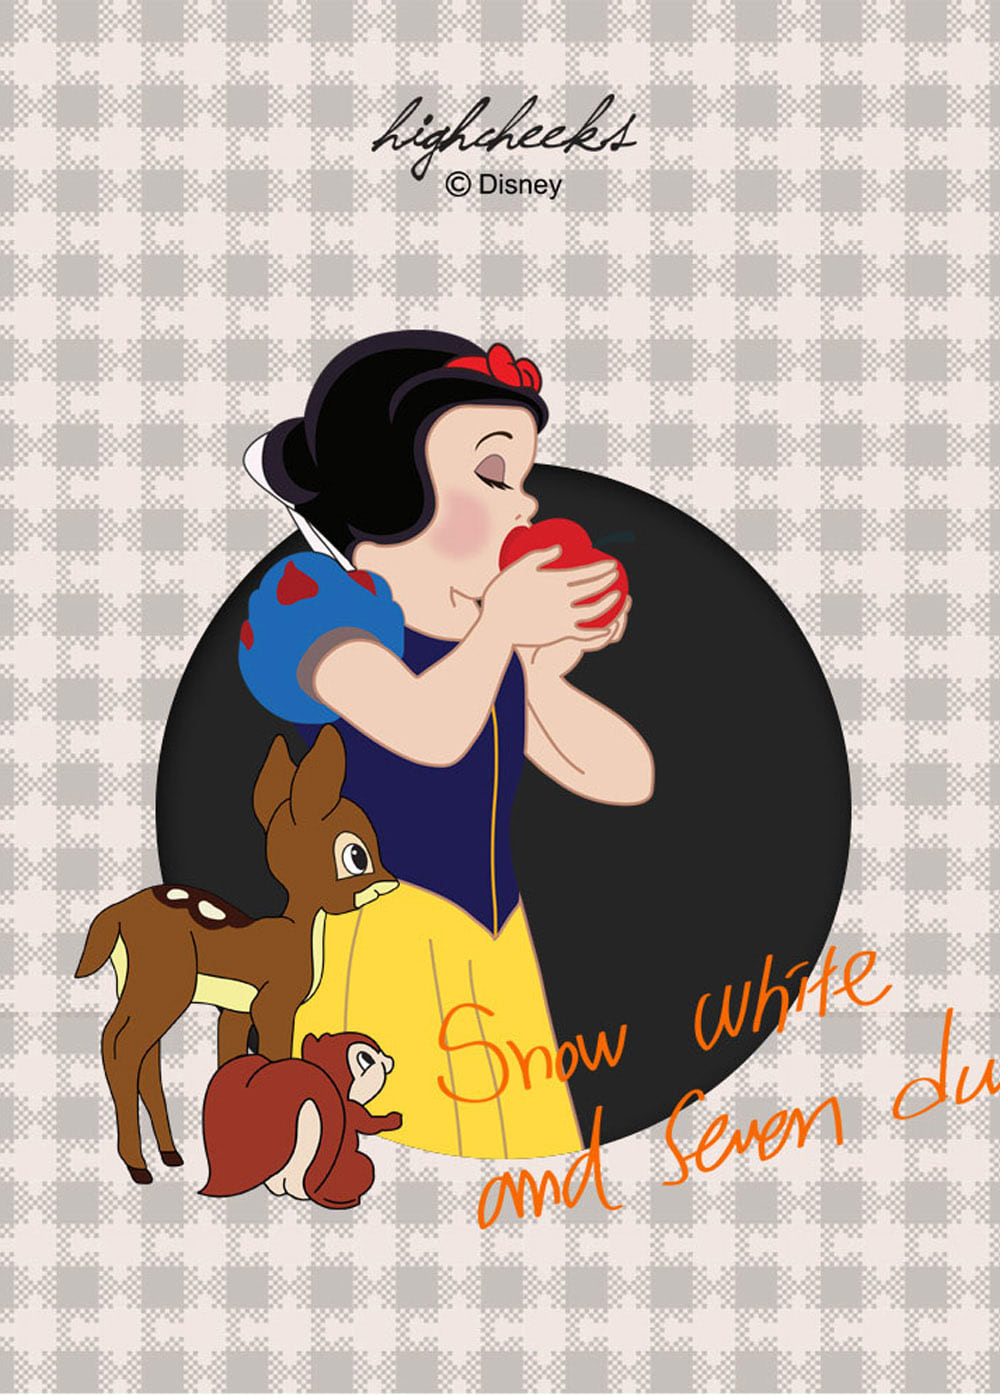 Snow White n Seven Dwarf